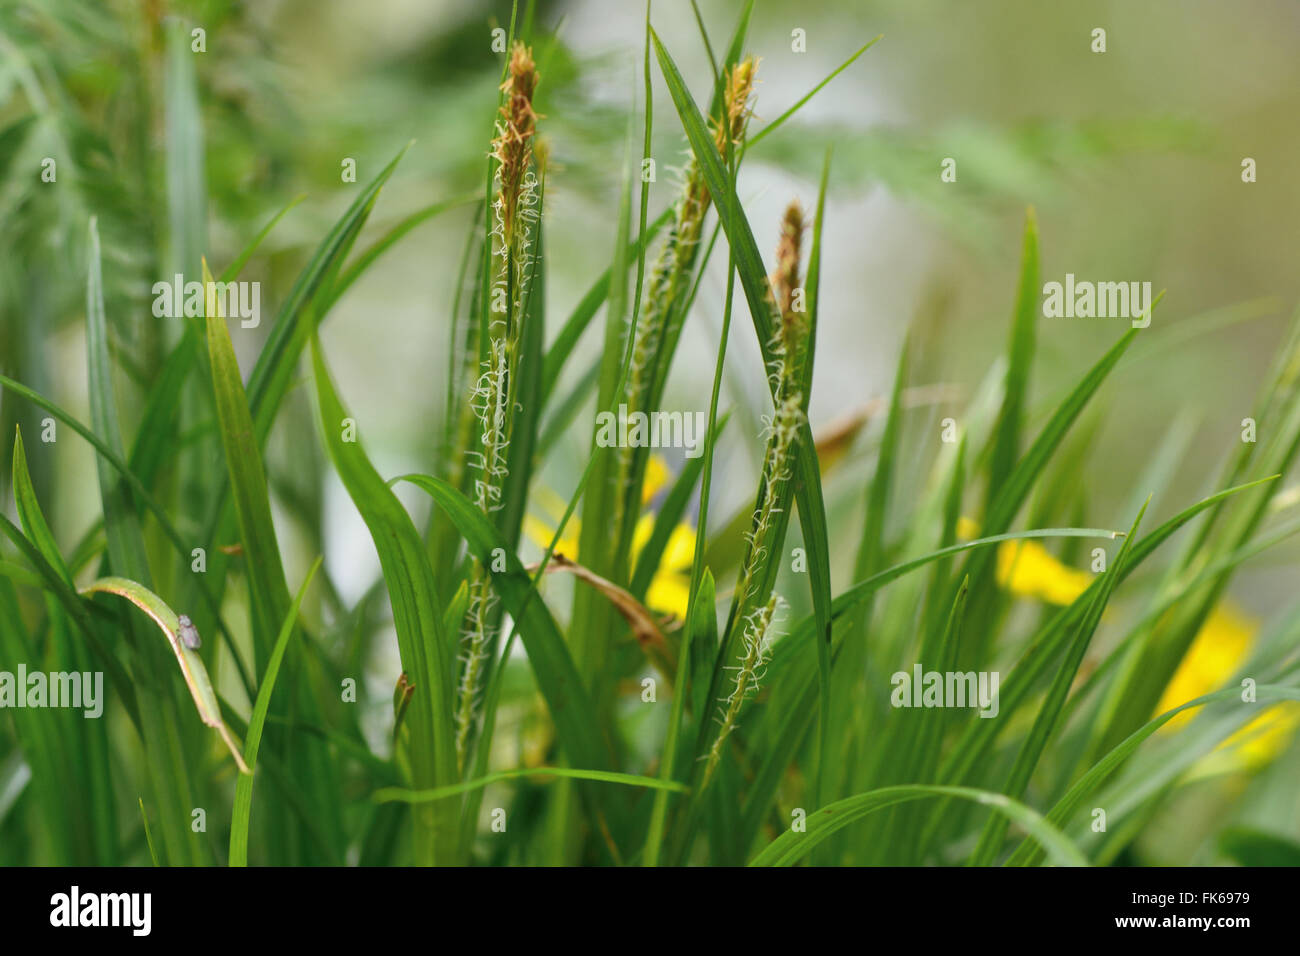 Holz-Segge (Carex Sylvatica). Blühende Pflanze in der Familie Cyperaceae, wächst in einem britischen Waldgebiet Stockfoto